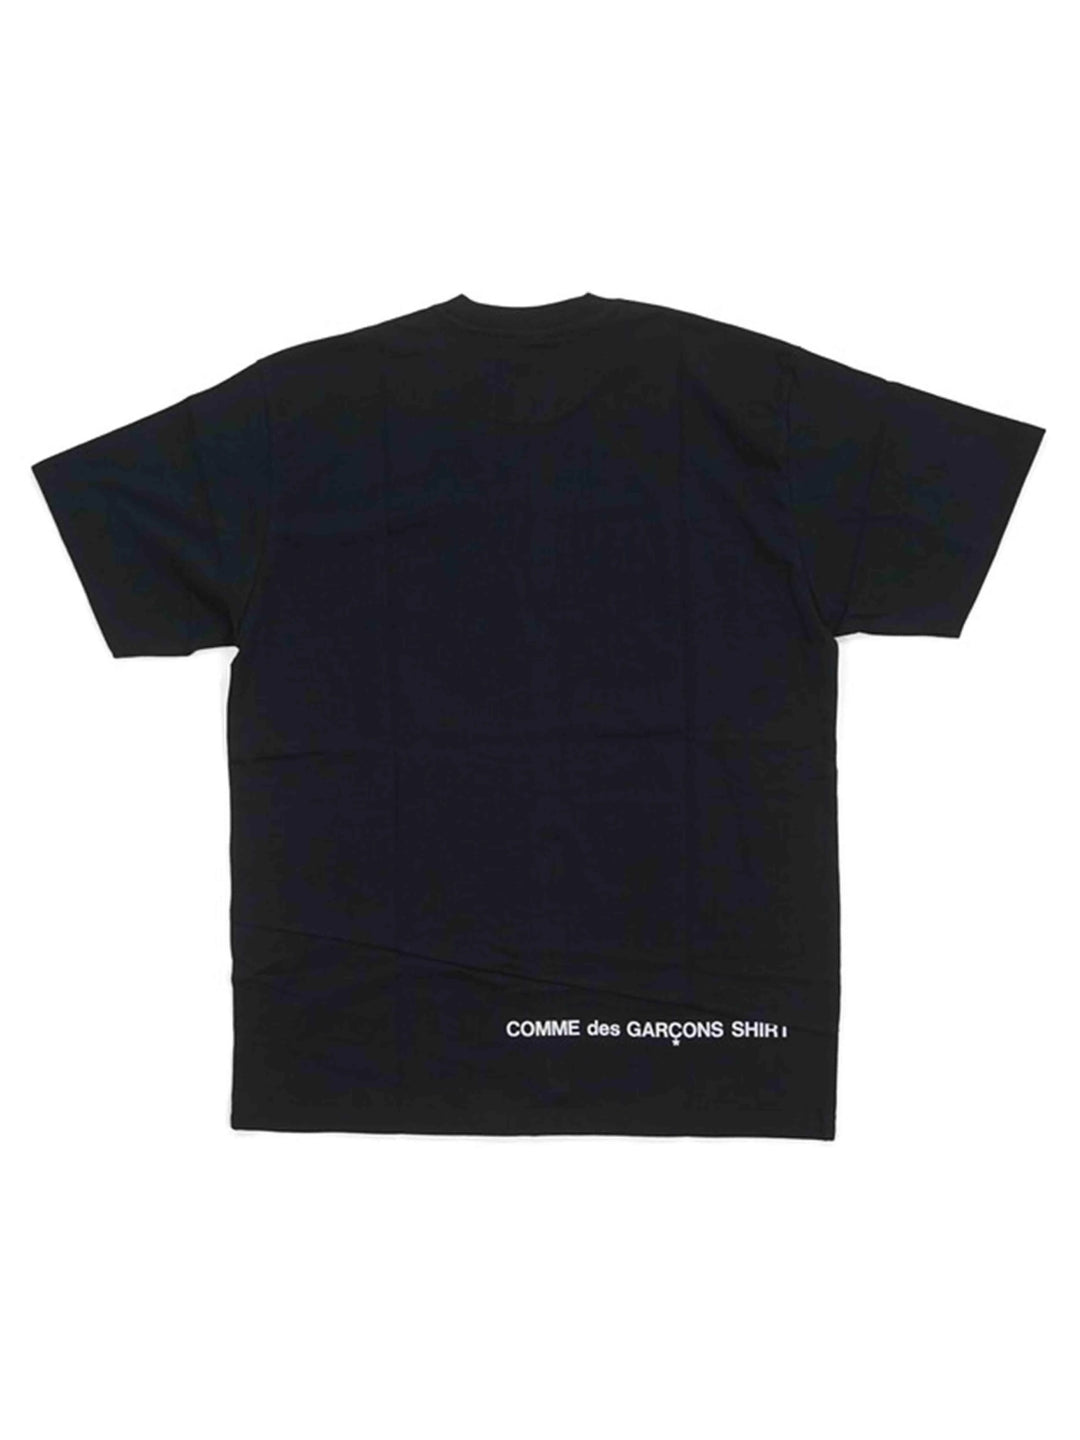 Supreme Comme des Garcons SHIRT Split Box Logo Tee Black [FW18] Supreme